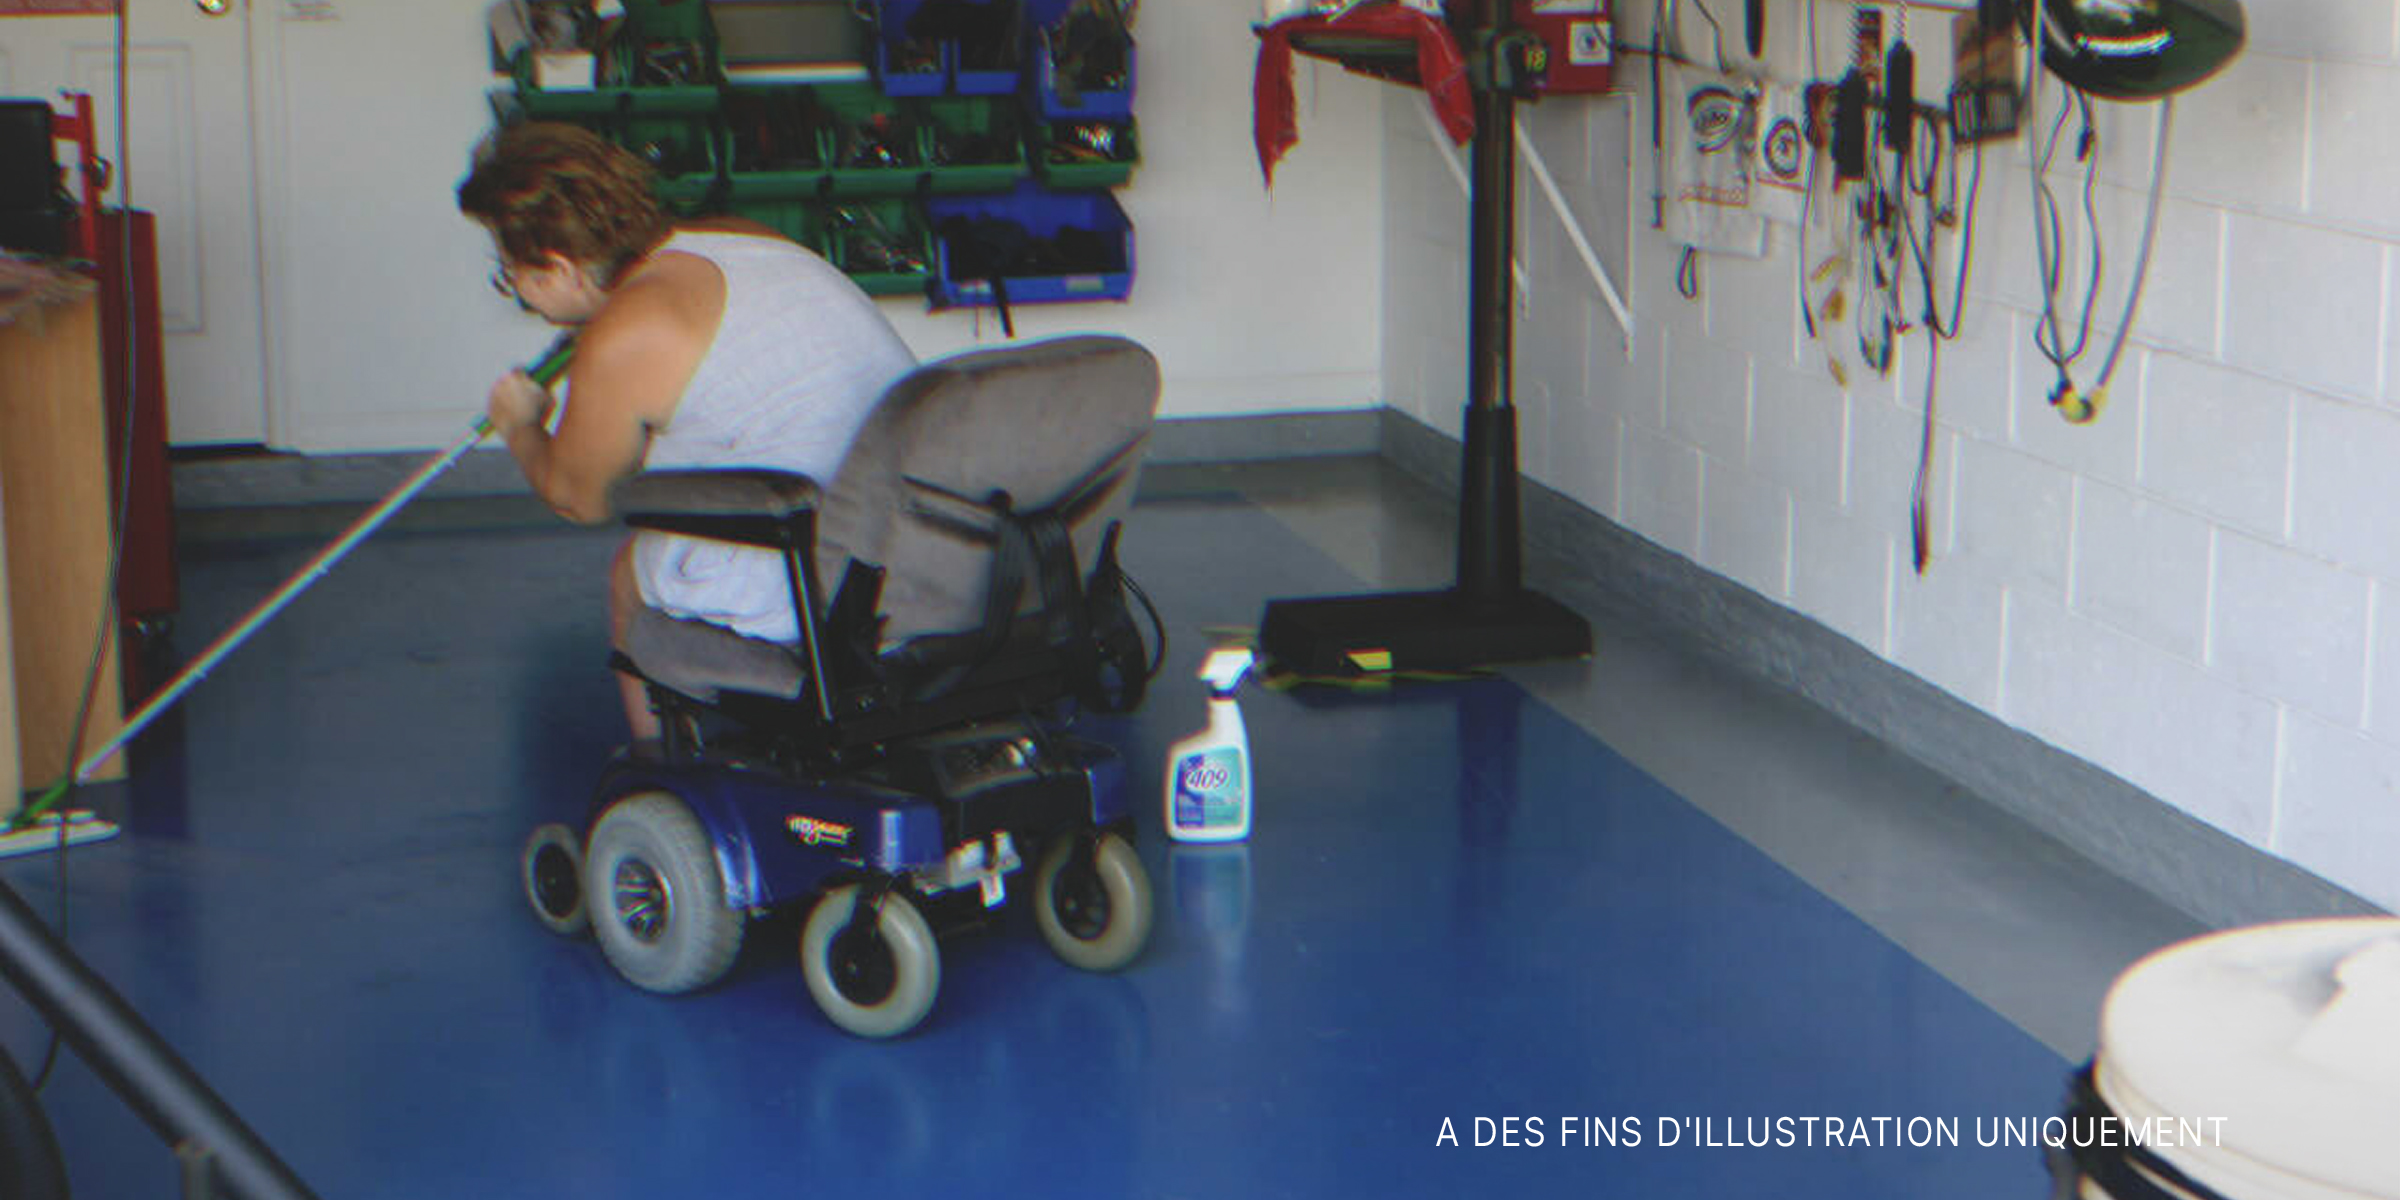 Une femme en fauteuil roulant nettoie le sol. | Source : Flickr